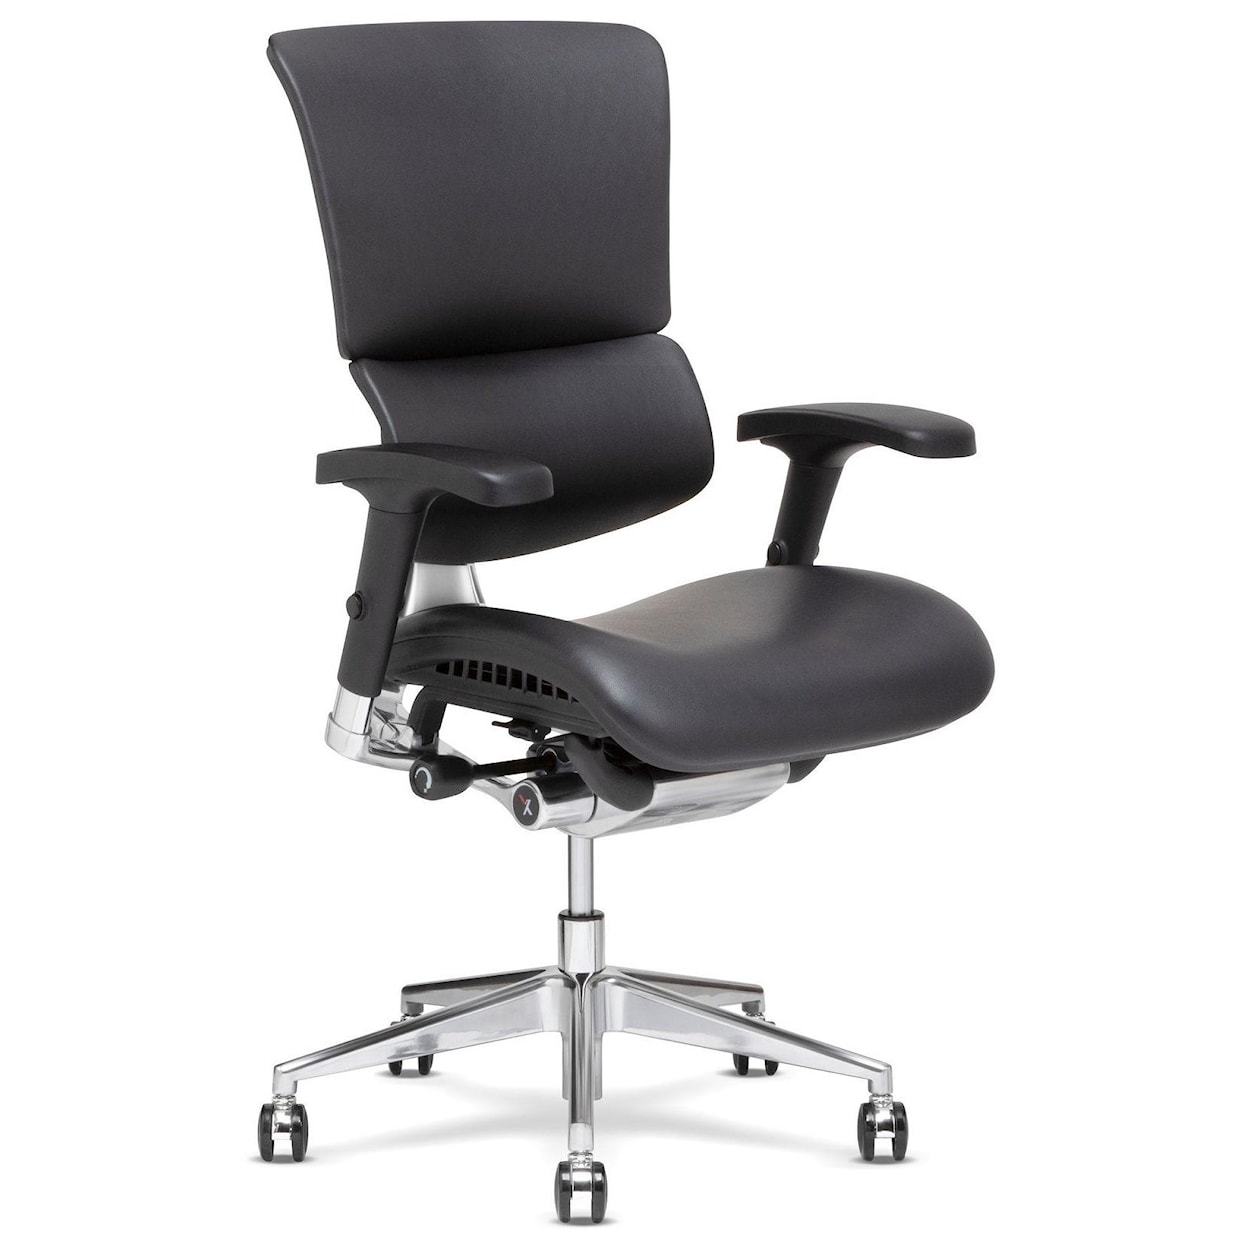 X-Chair X4 Desk Chair